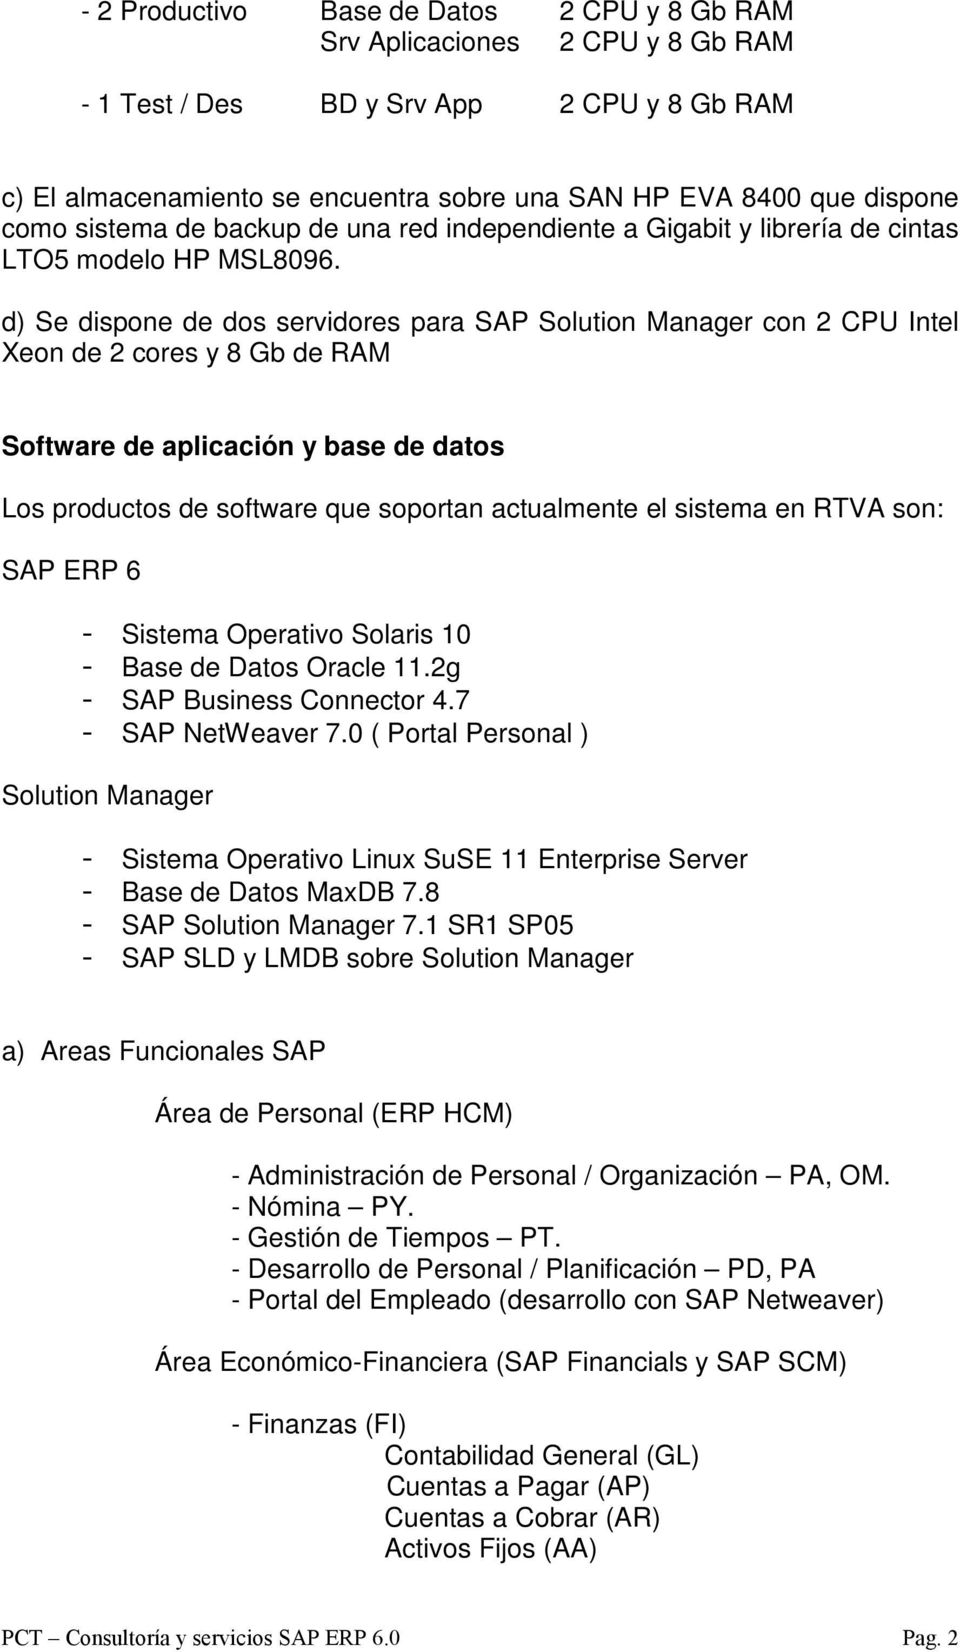 d) Se dispone de dos servidores para SAP Solution Manager con 2 CPU Intel Xeon de 2 cores y 8 Gb de RAM Software de aplicación y base de datos Los productos de software que soportan actualmente el